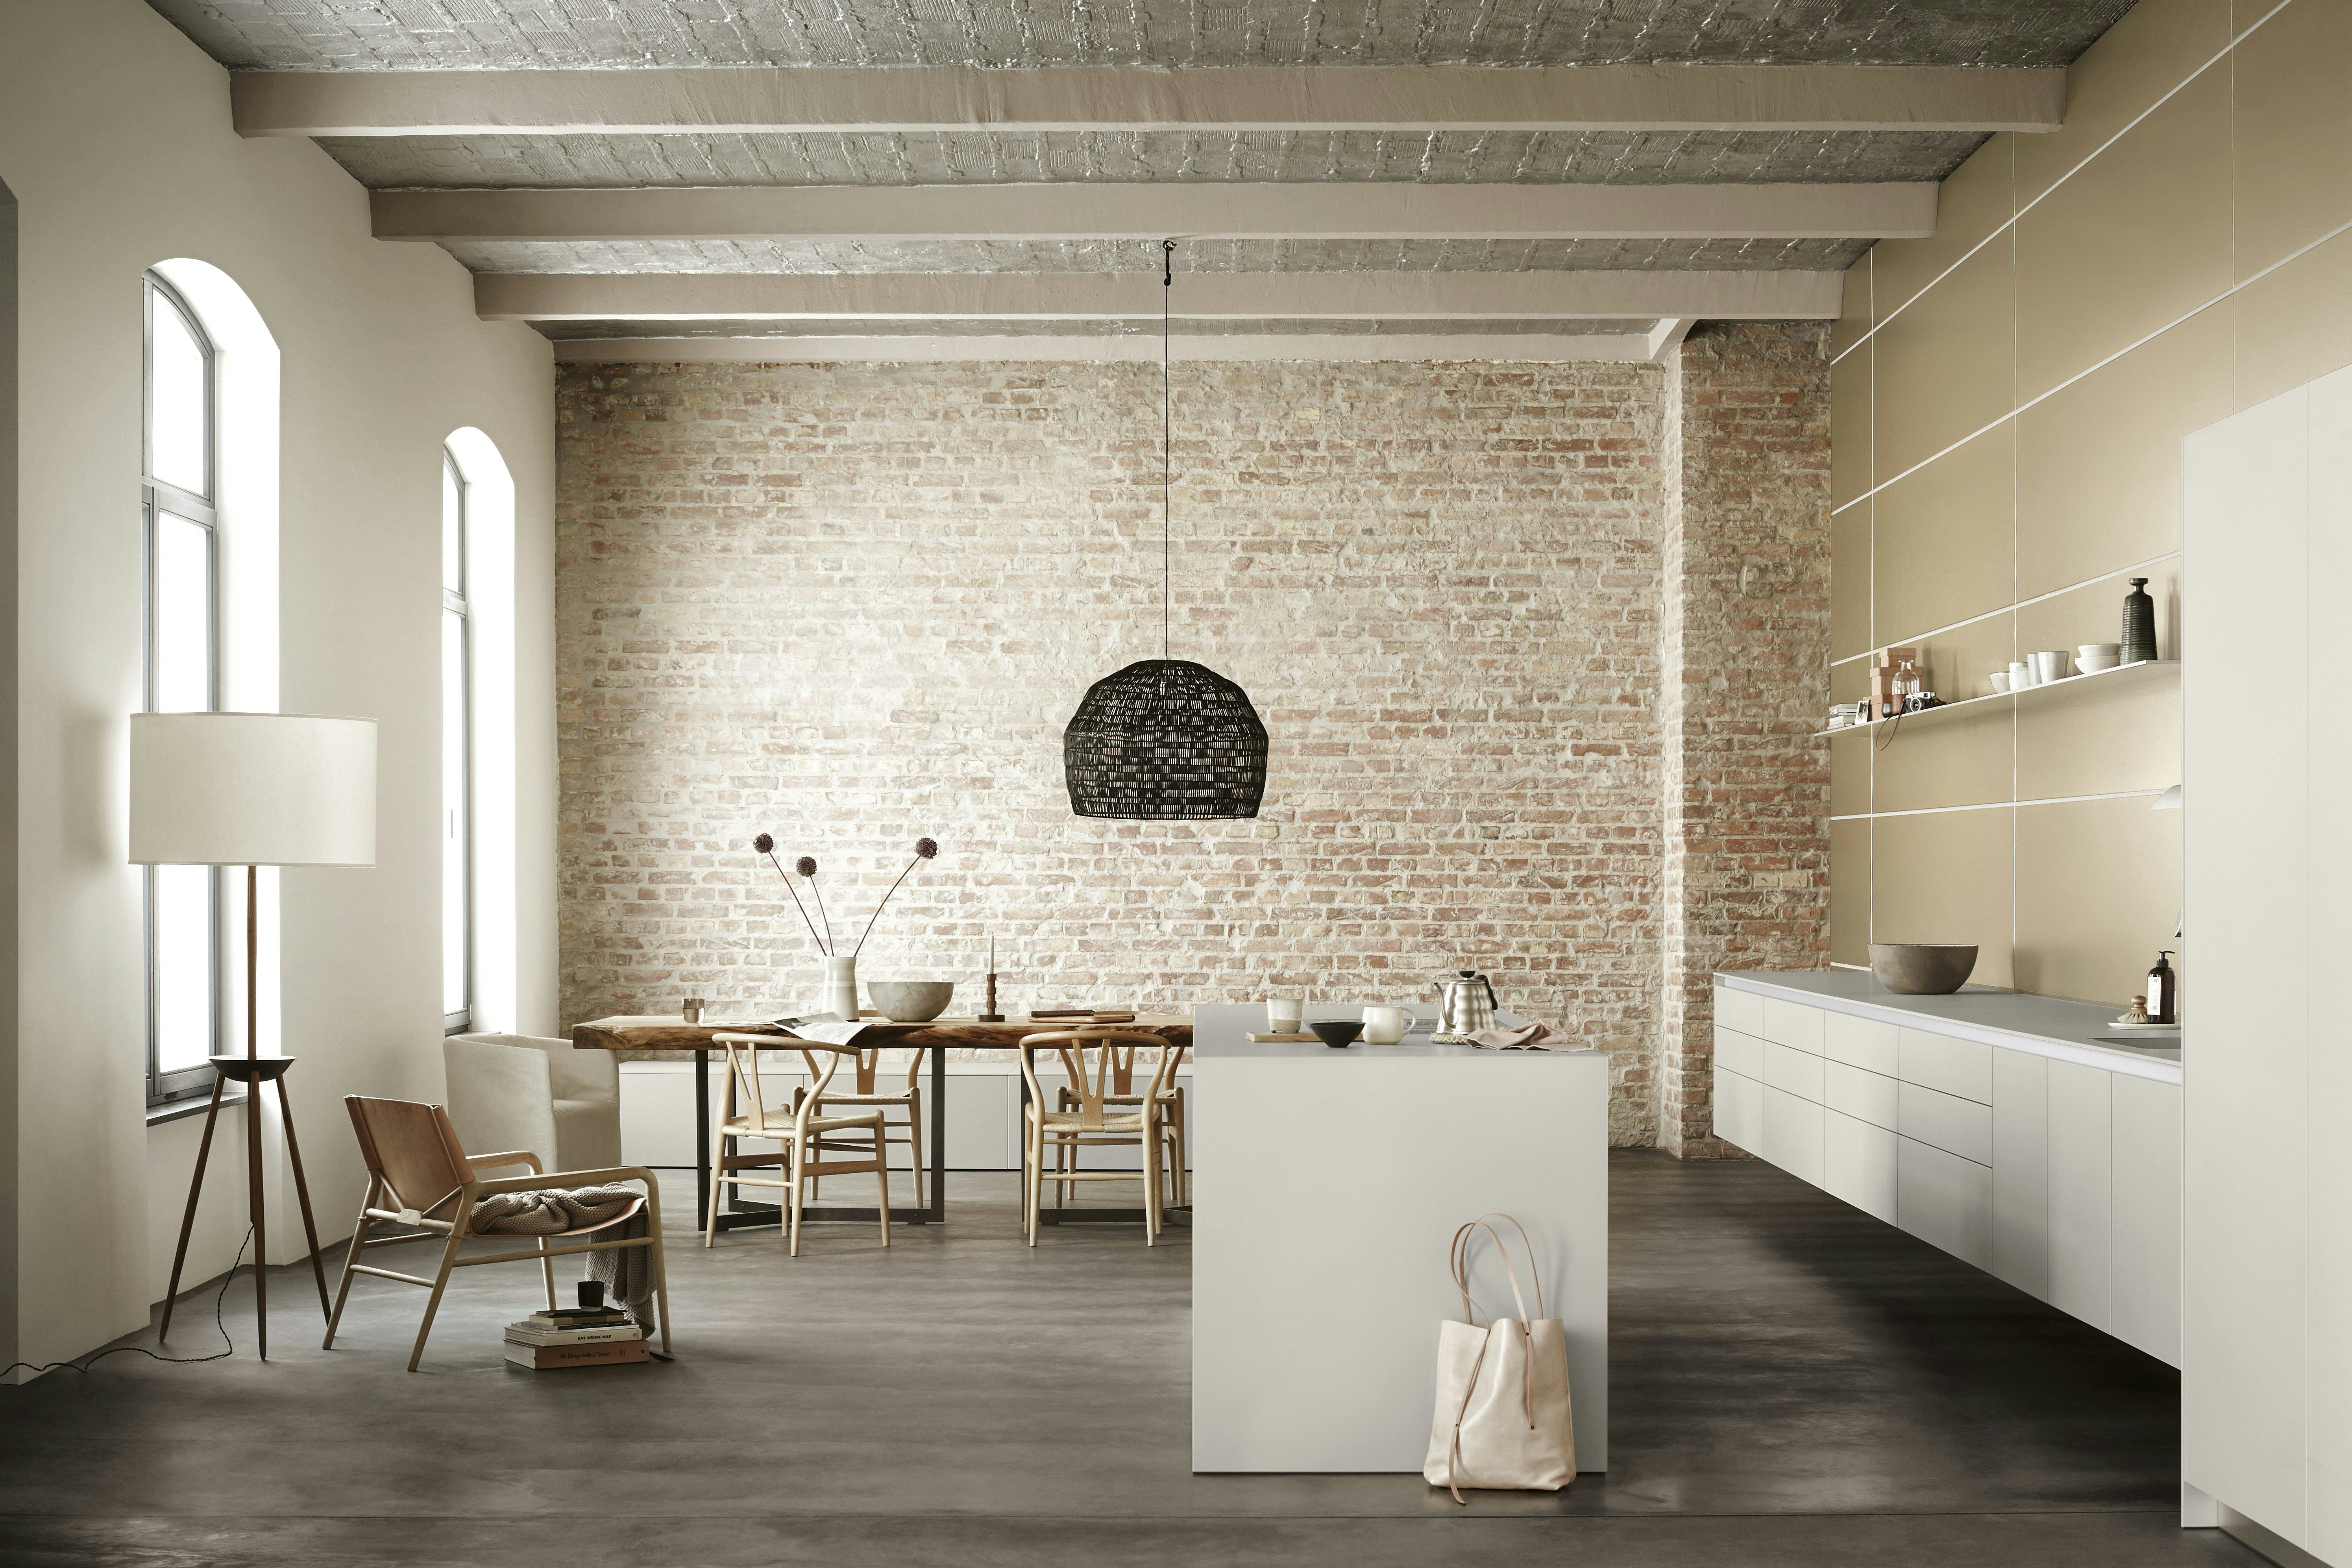 bulthaup: architectuur voor keuken en leefruimte